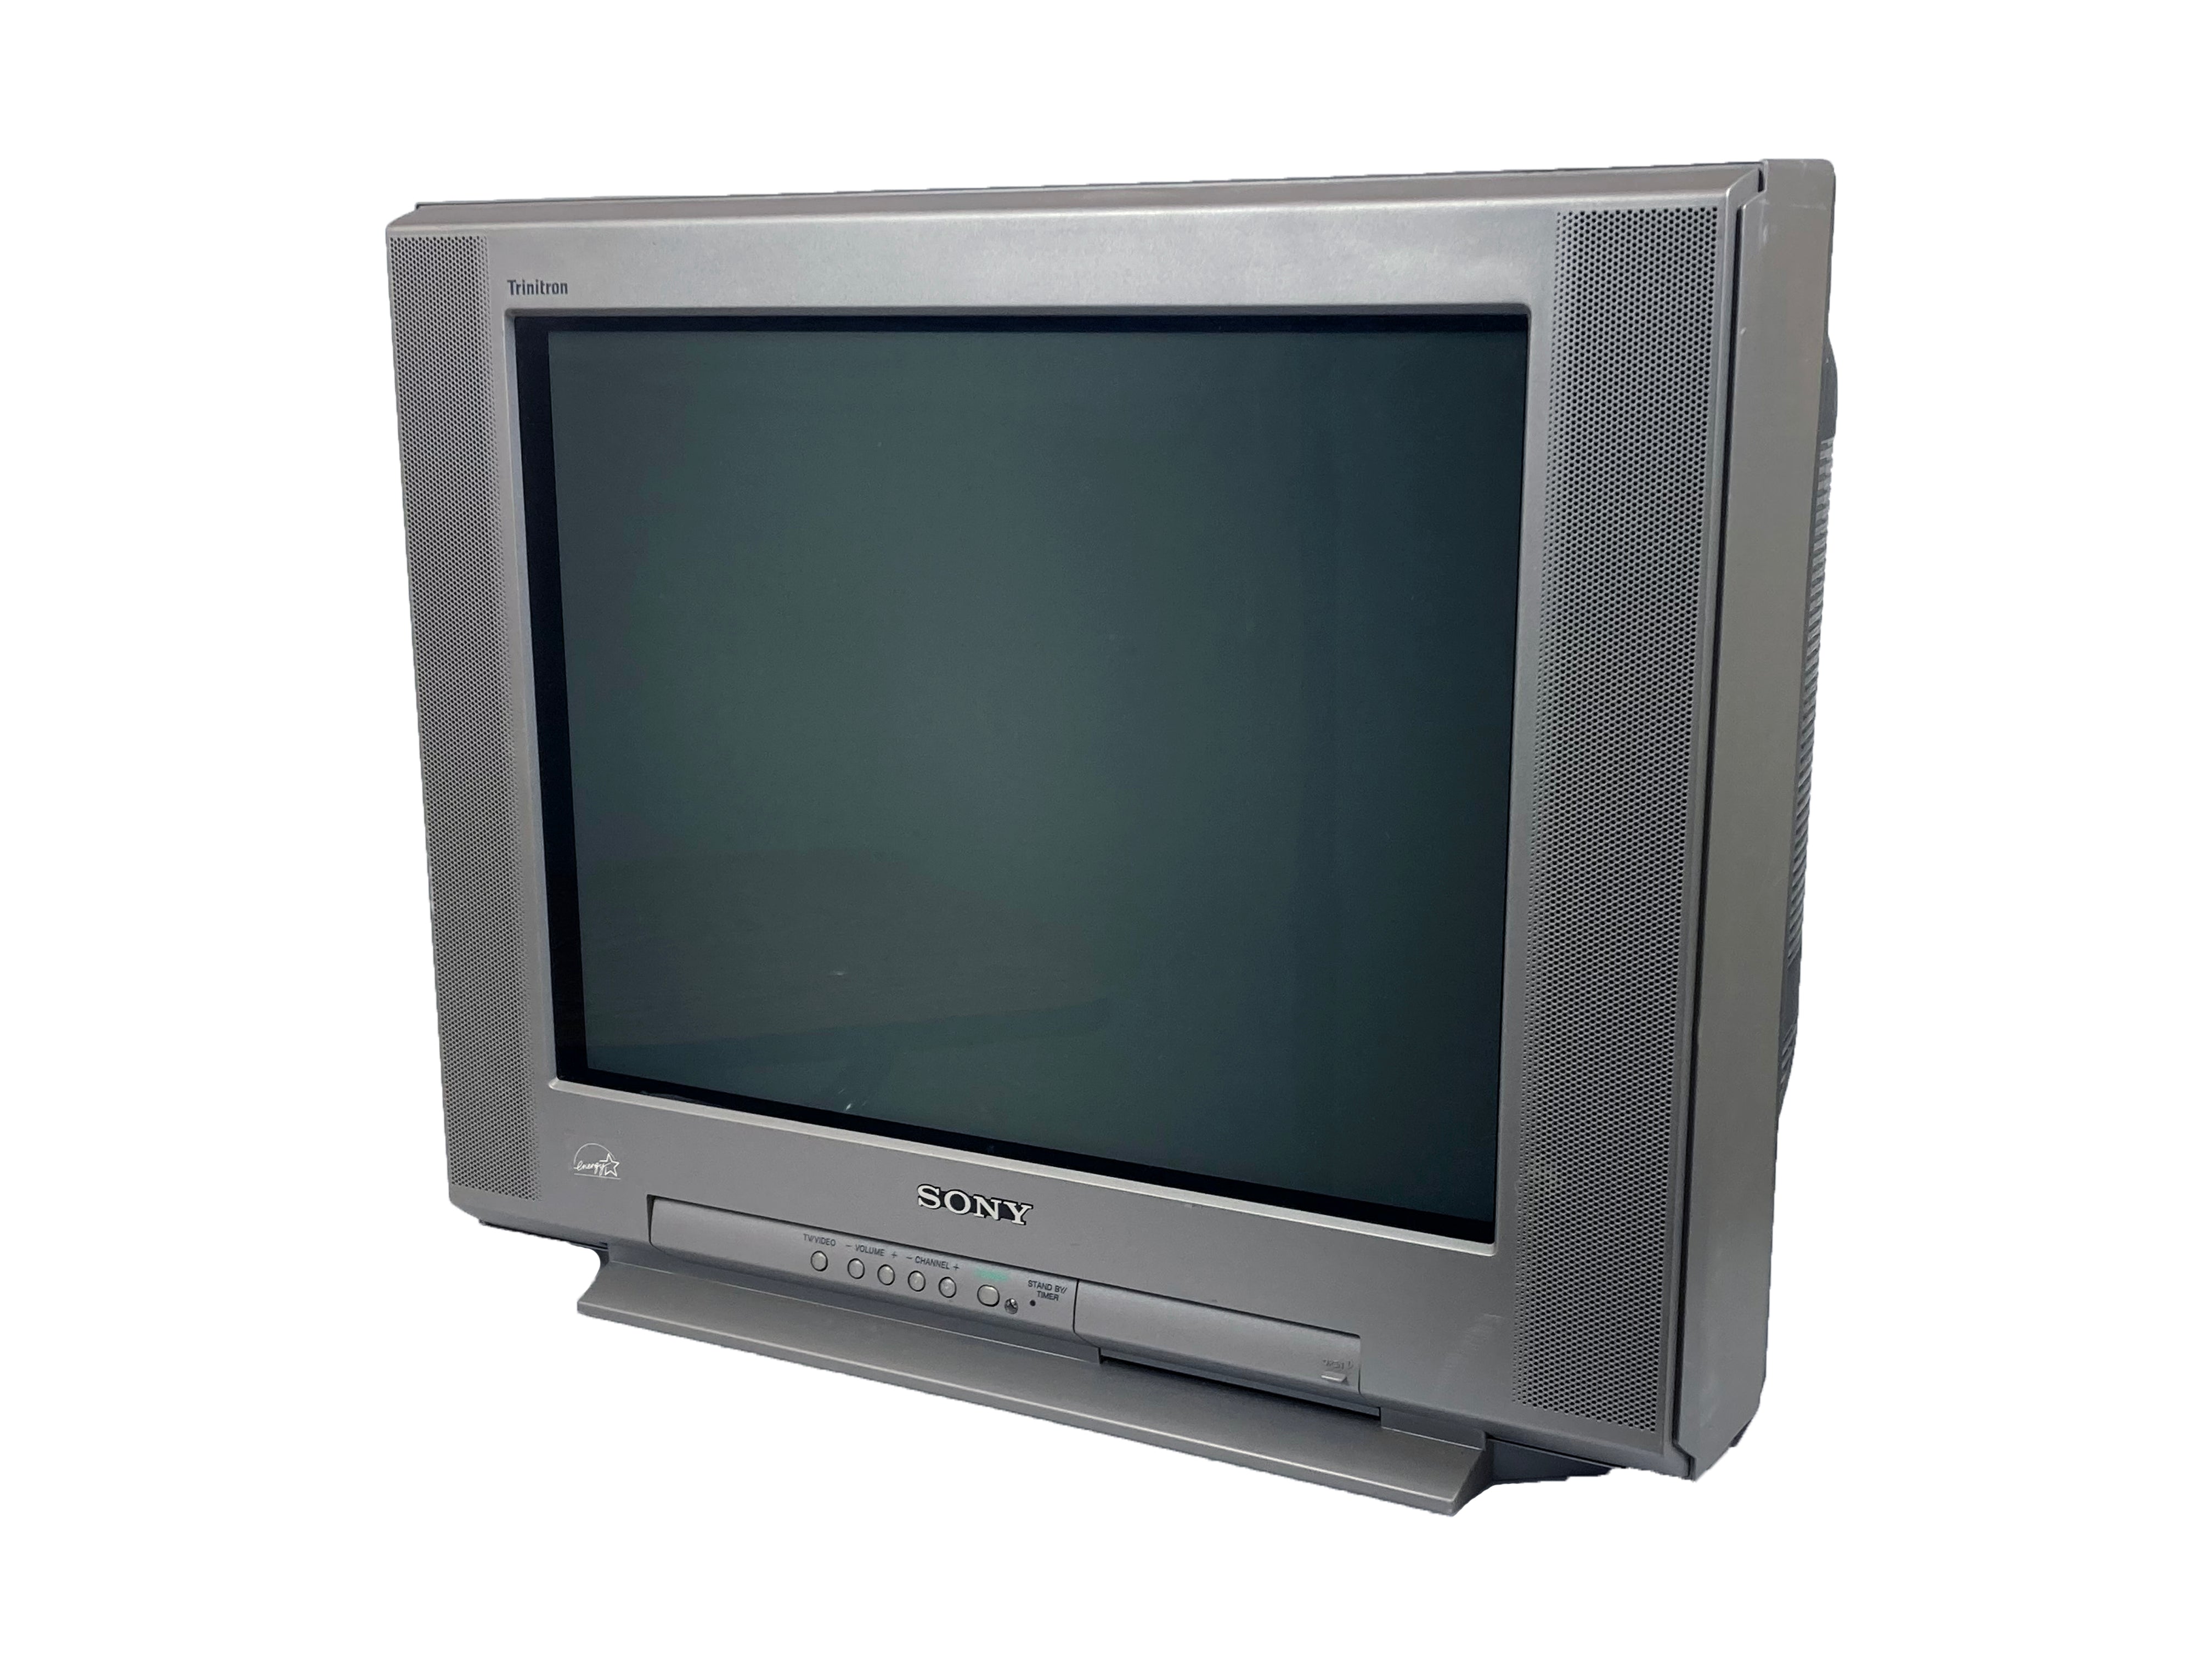 Sony KV-20FV1 20" FD Trinitron WEGA Television